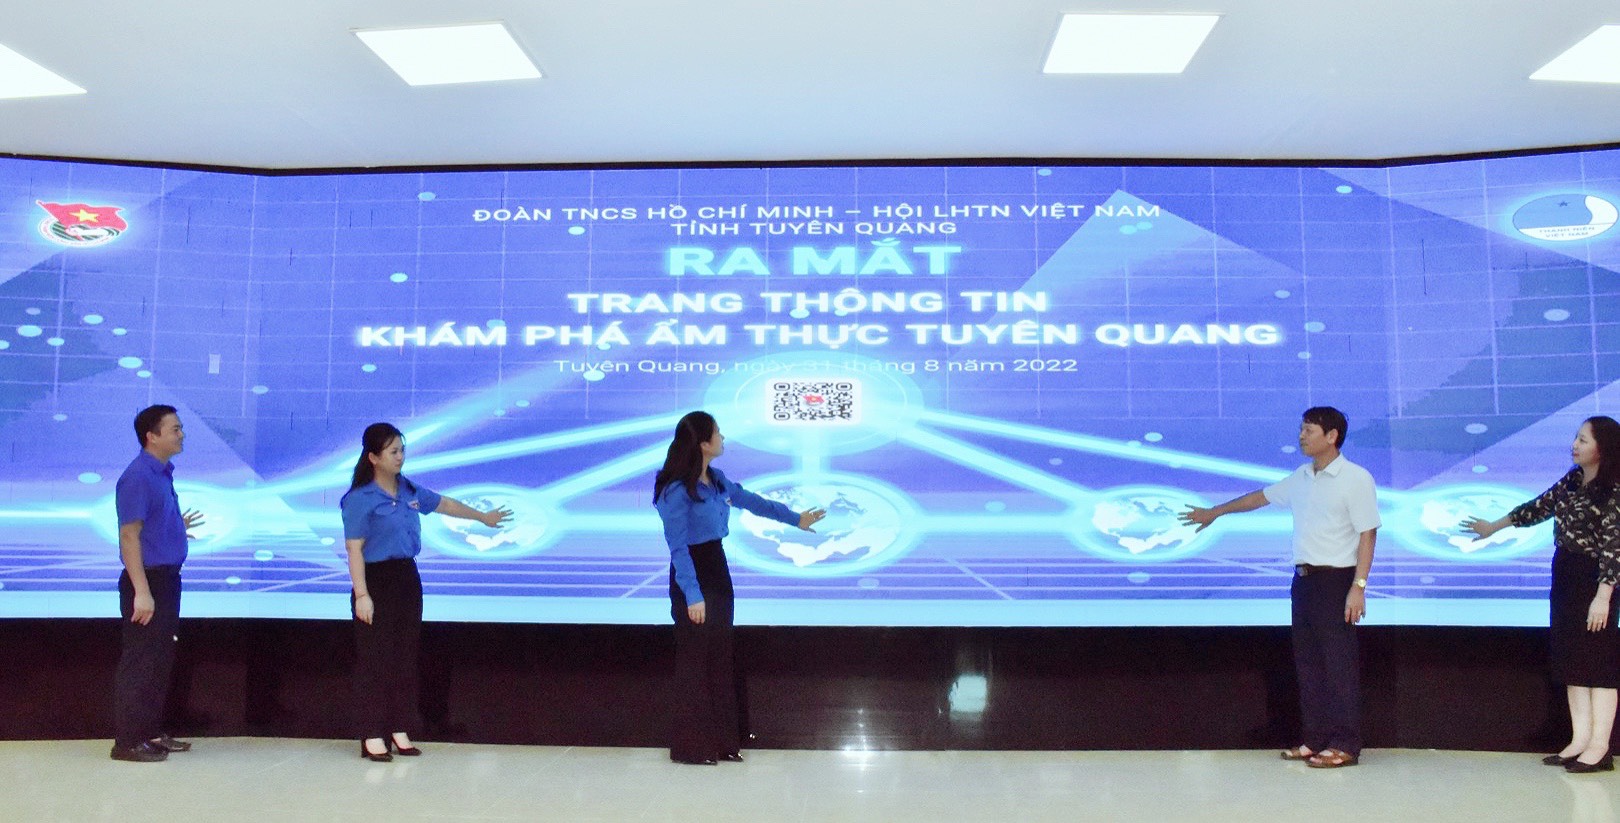 Tỉnh đoàn Tuyên Quang ra mắt Trang thông tin khám phá ẩm thực Tuyên Quang